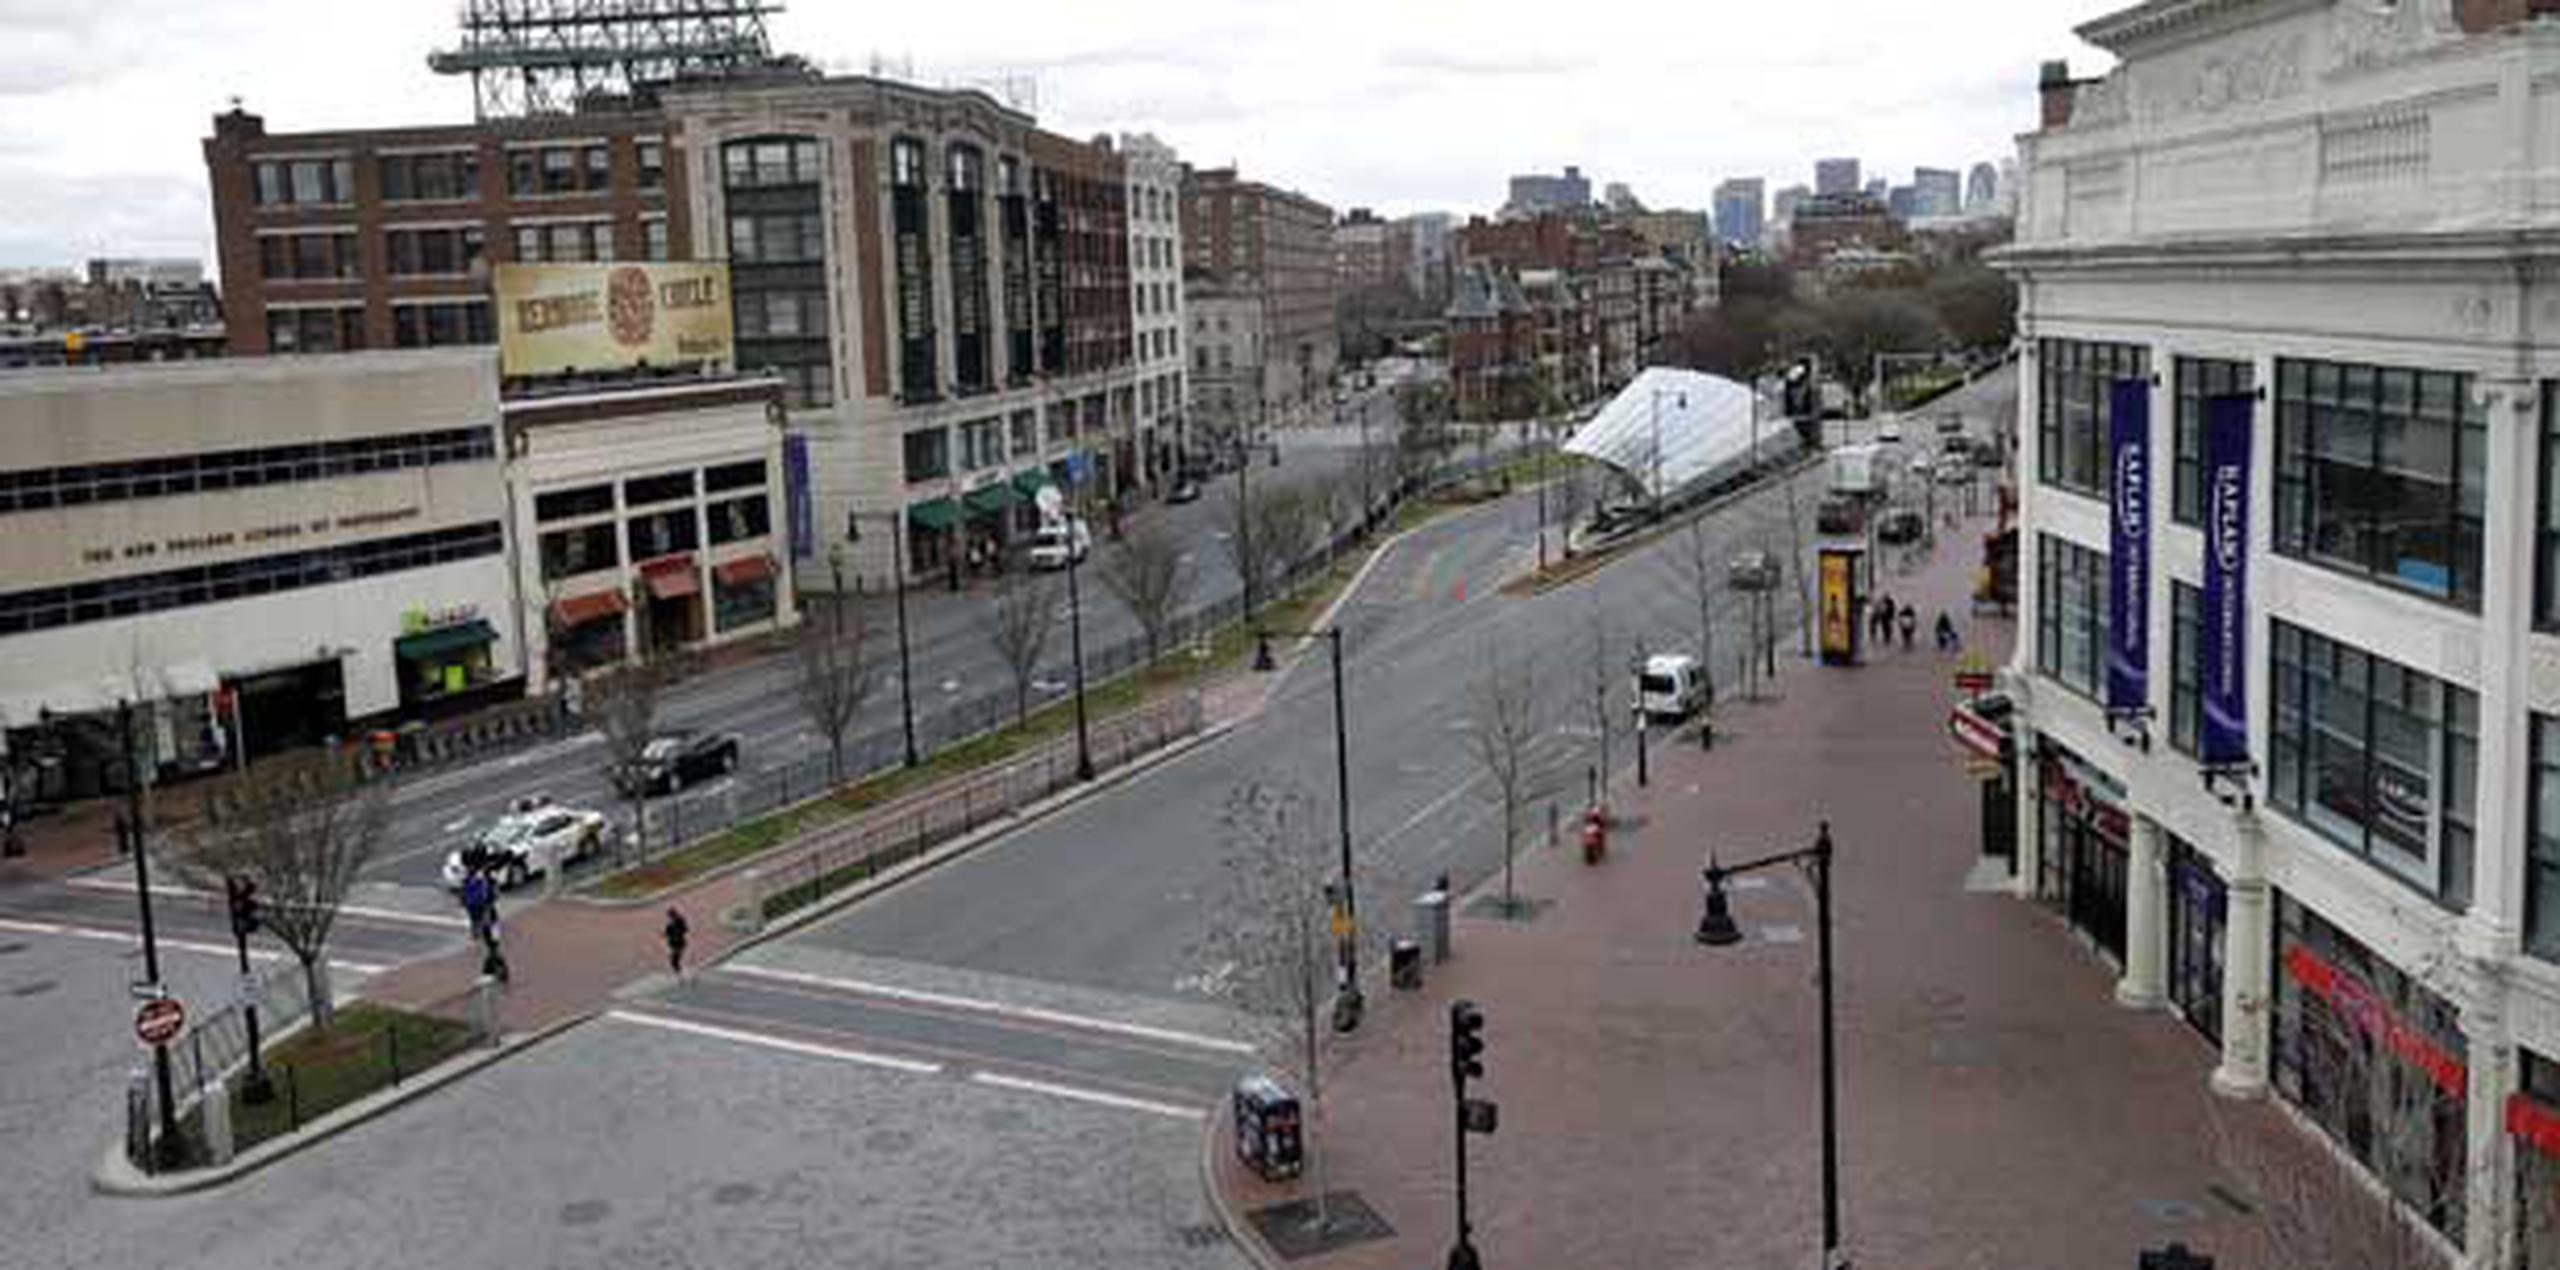 El área de Kenmore en Boston usualmente está repleta de personas pero se encuentra virtualmente desierta.  (AP/Elise Amendola)
